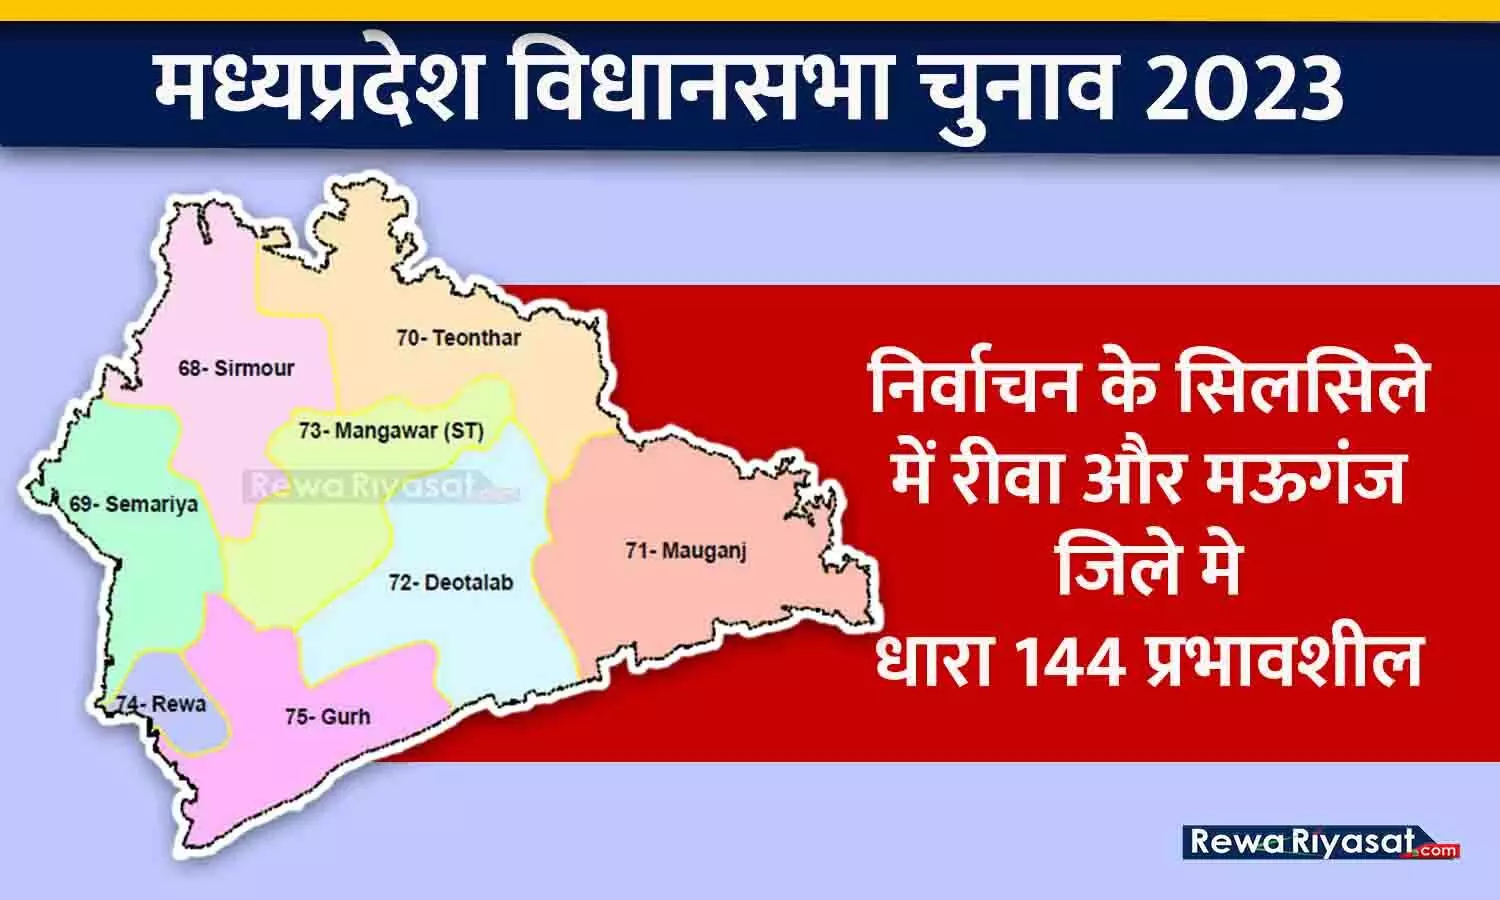 मध्यप्रदेश विधानसभा निर्वाचन 2023: निर्वाचन के सिलसिले में रीवा और मऊगंज जिले मे धारा 144 प्रभावशील